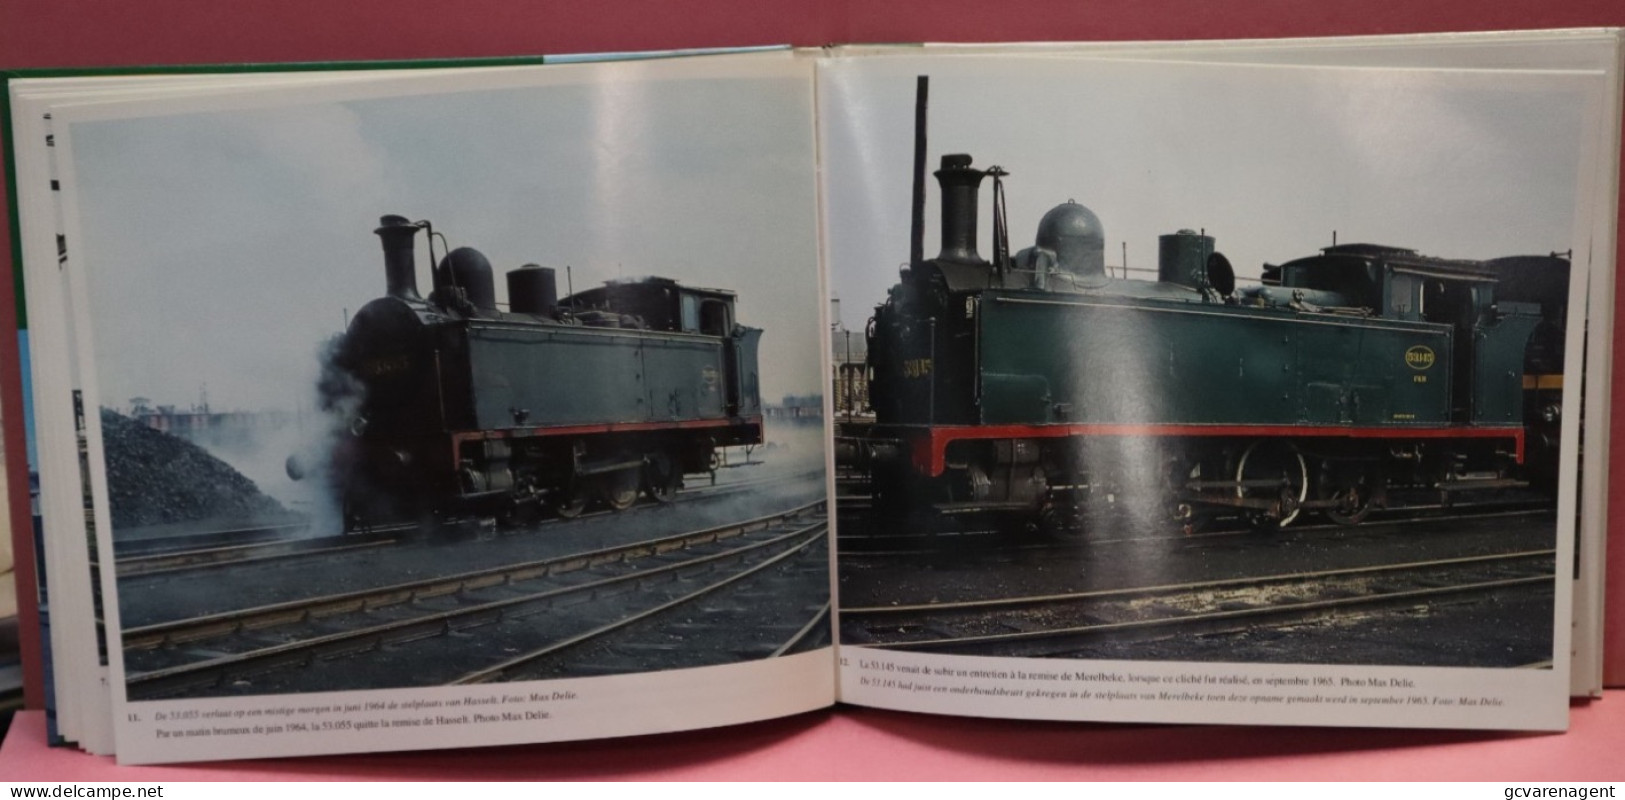 2 TALIG - SNCB COULEURS  KLEUREN NMBS  1961 - 1970 51 BLZ TEKST 95 AFBEELDINGEN - MOOIE STAAT  26 X 21 CM  - VOIR IMAGES - Railway & Tramway